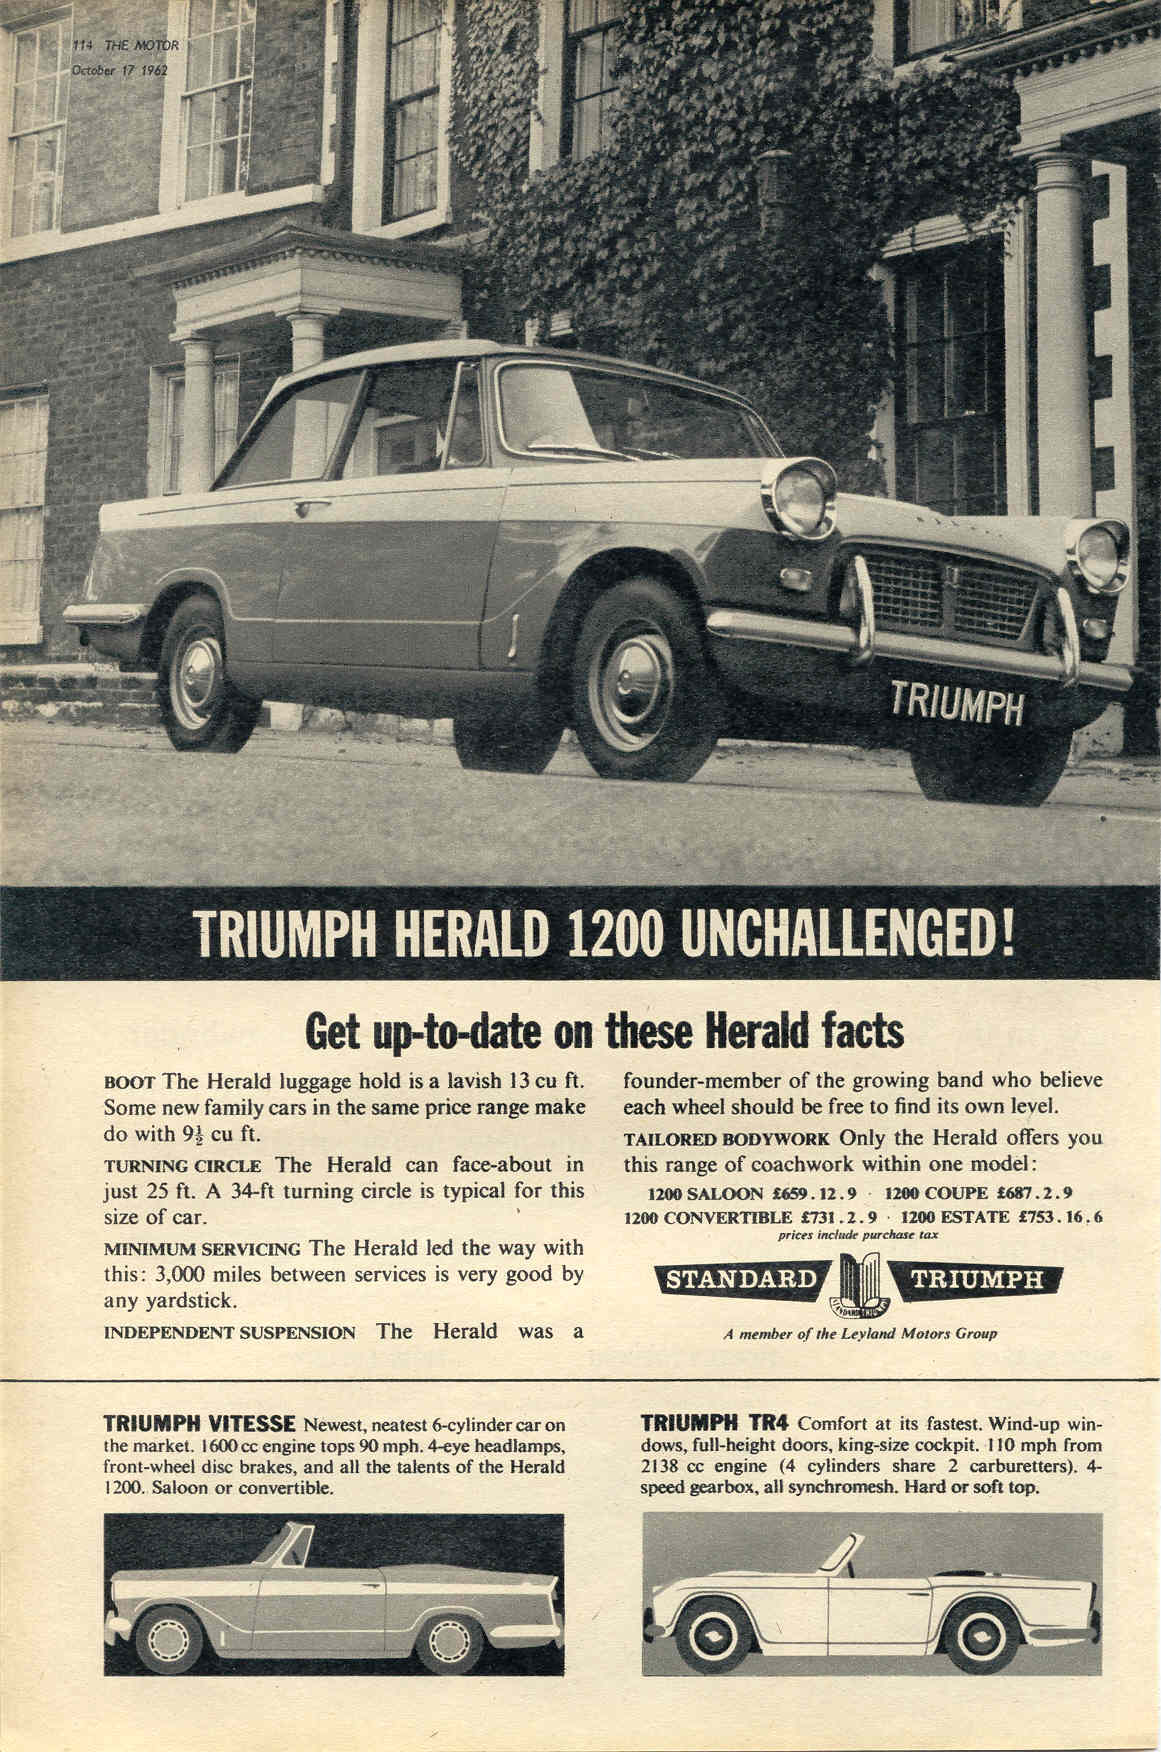 Werbung - Triumph Herald!